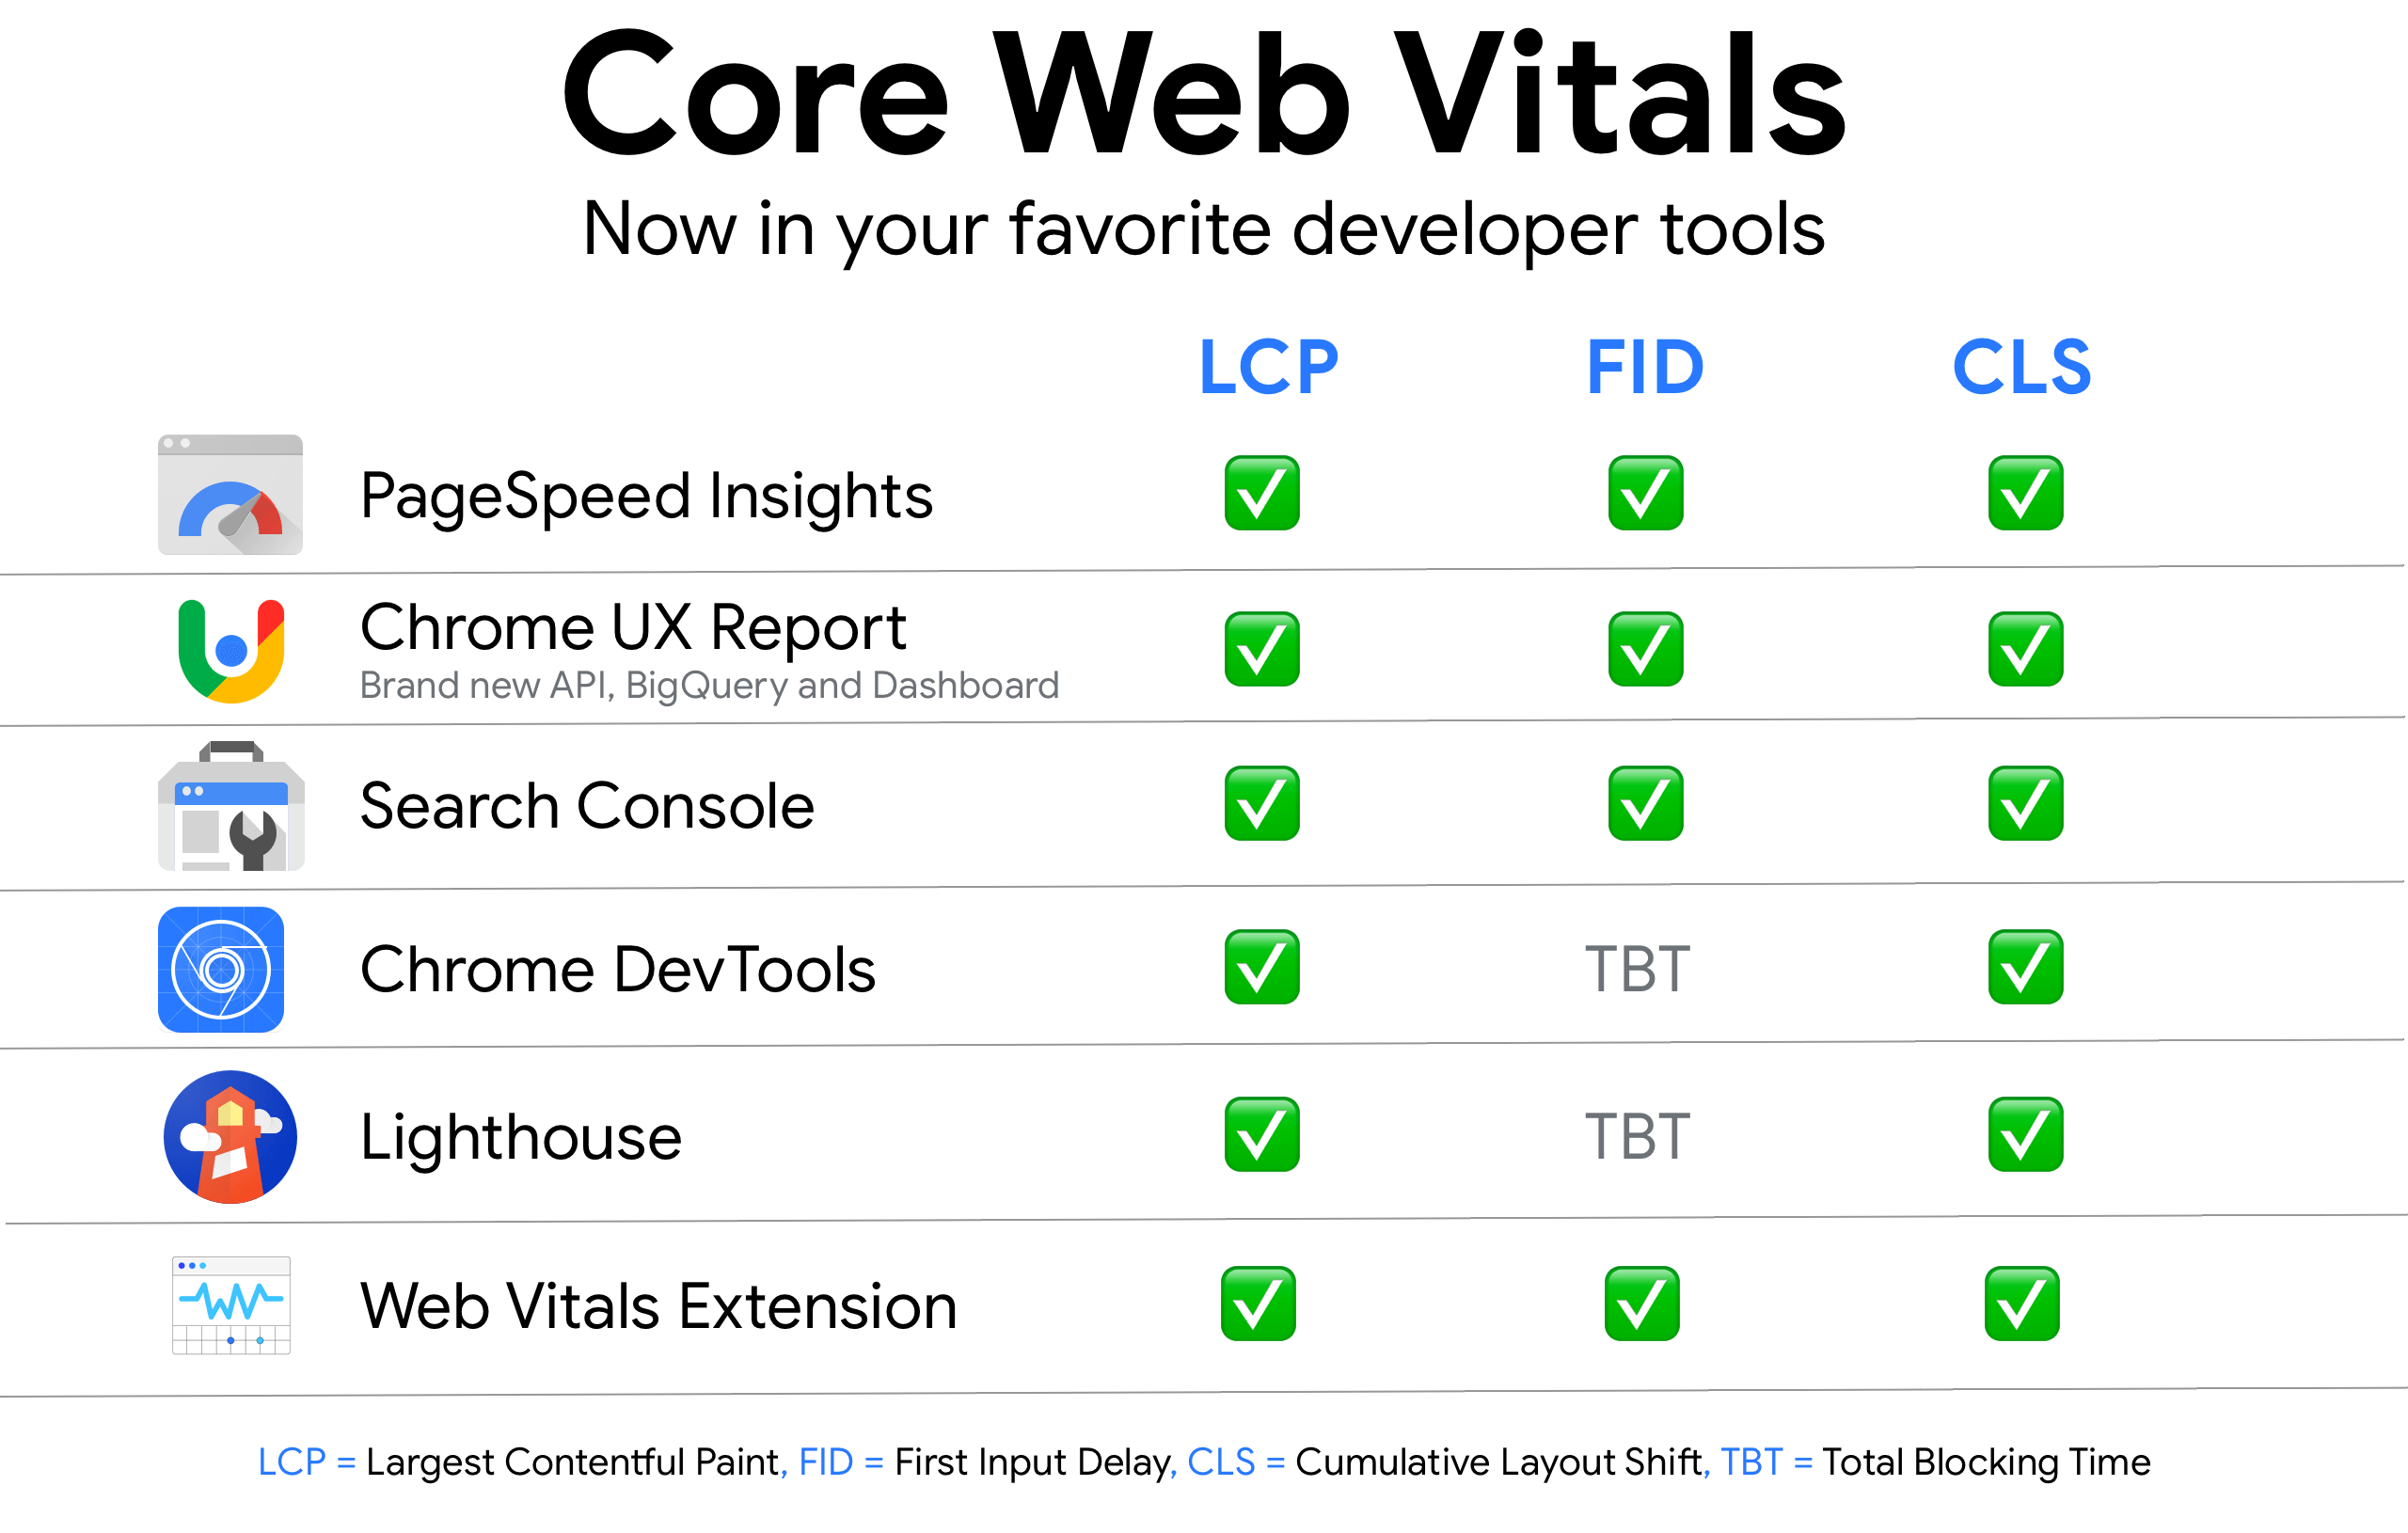 支持 Core Web Vitals 指标的 Chrome 工具和搜索工具摘要